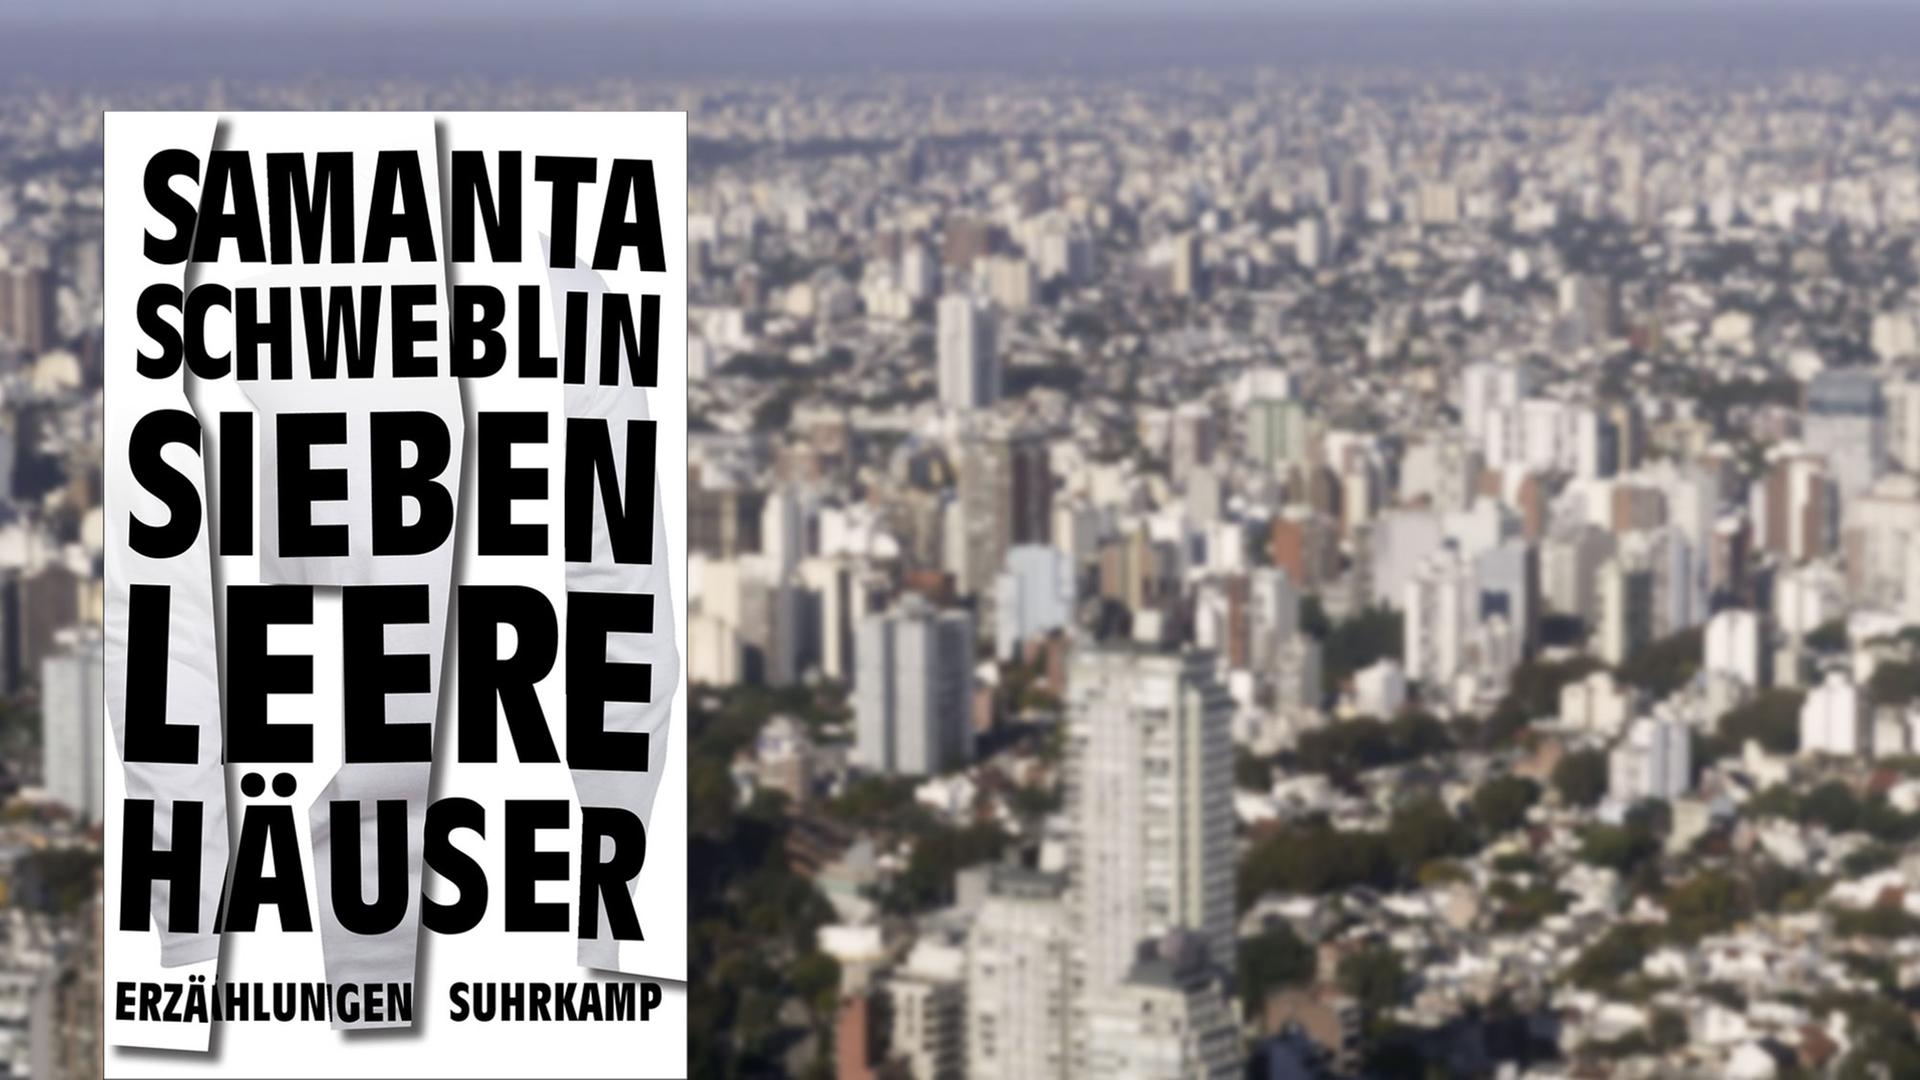 Buchcover "Sieben leere Häuser" von Samanta Schweblin, im Hintergrund das Häusermeer von Buenos Aires